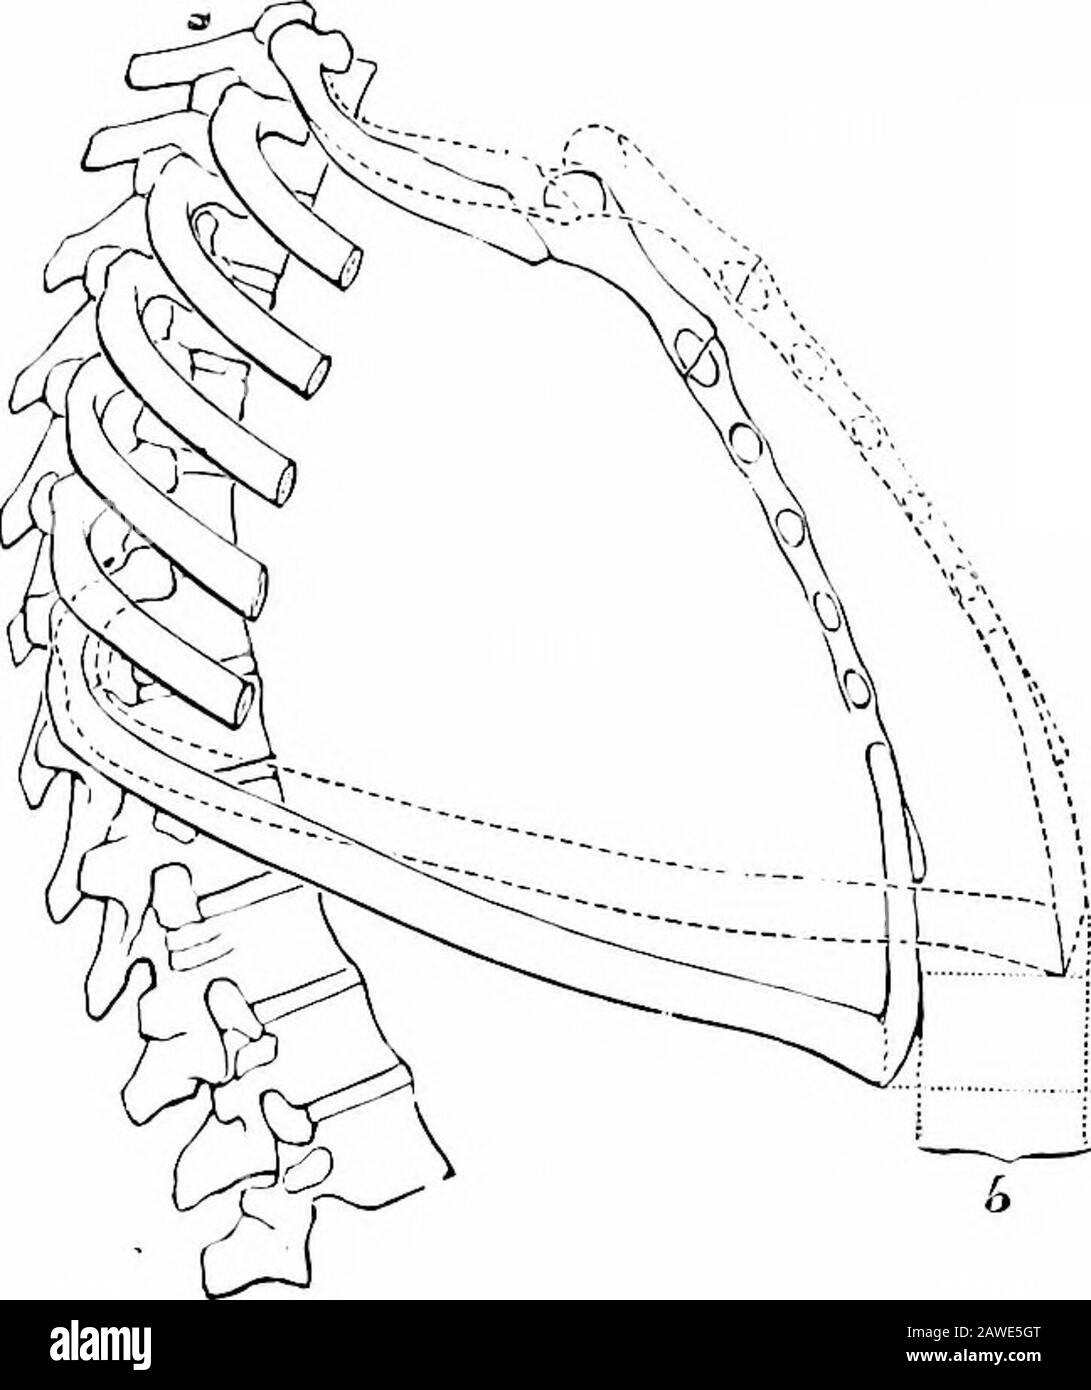 Anatomia applicata e chinesiologia, il meccanismo del movimento muscolare . Fig. Posizione dei polmoni nel torace. (Gerrish.) rotazione di ciascuna nervatura sull'asse che passa attraverso le sue due estremità. Nella posizione di riposo le nervature si inclinano verso il basso ad un angolo di 15 to20 gradi dall'orizzontale, E, di conseguenza, la loro eleva-zione porta lo sterno e l'intero fronte del torace dalla colonna vertebrale, come mostrato in Fig. 135. Questo ingrandisce il più grande da davanti a dietro; poiché le nervature slant verso il basso e lato-rward dove articolano la colonna vertebrale, questa elevazione aumenterà il latera Foto Stock